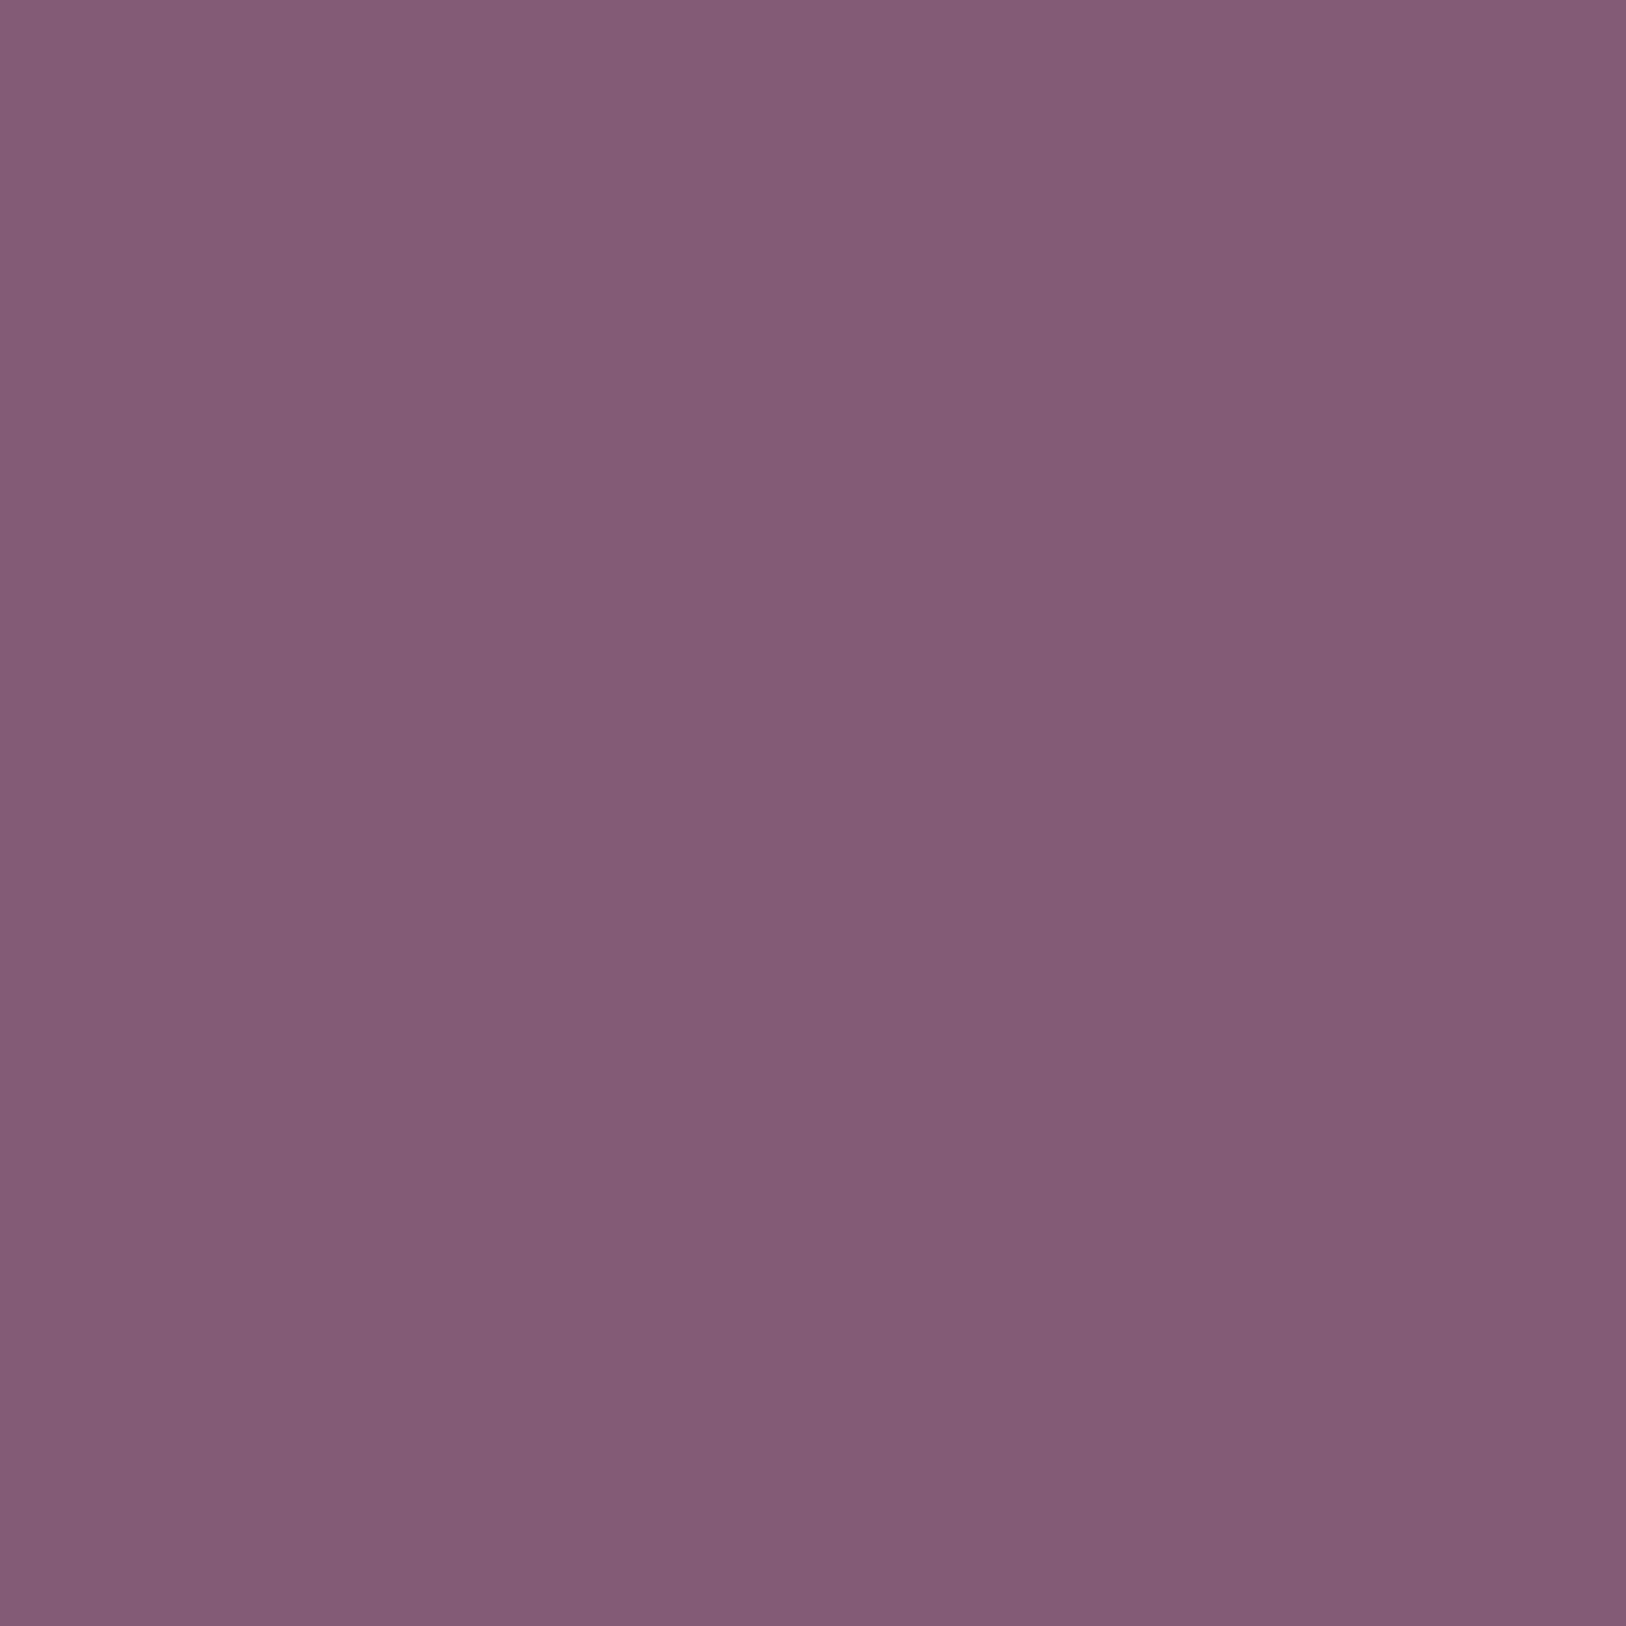 Plum Wallpaper-827v1h5 - Lilac - HD Wallpaper 